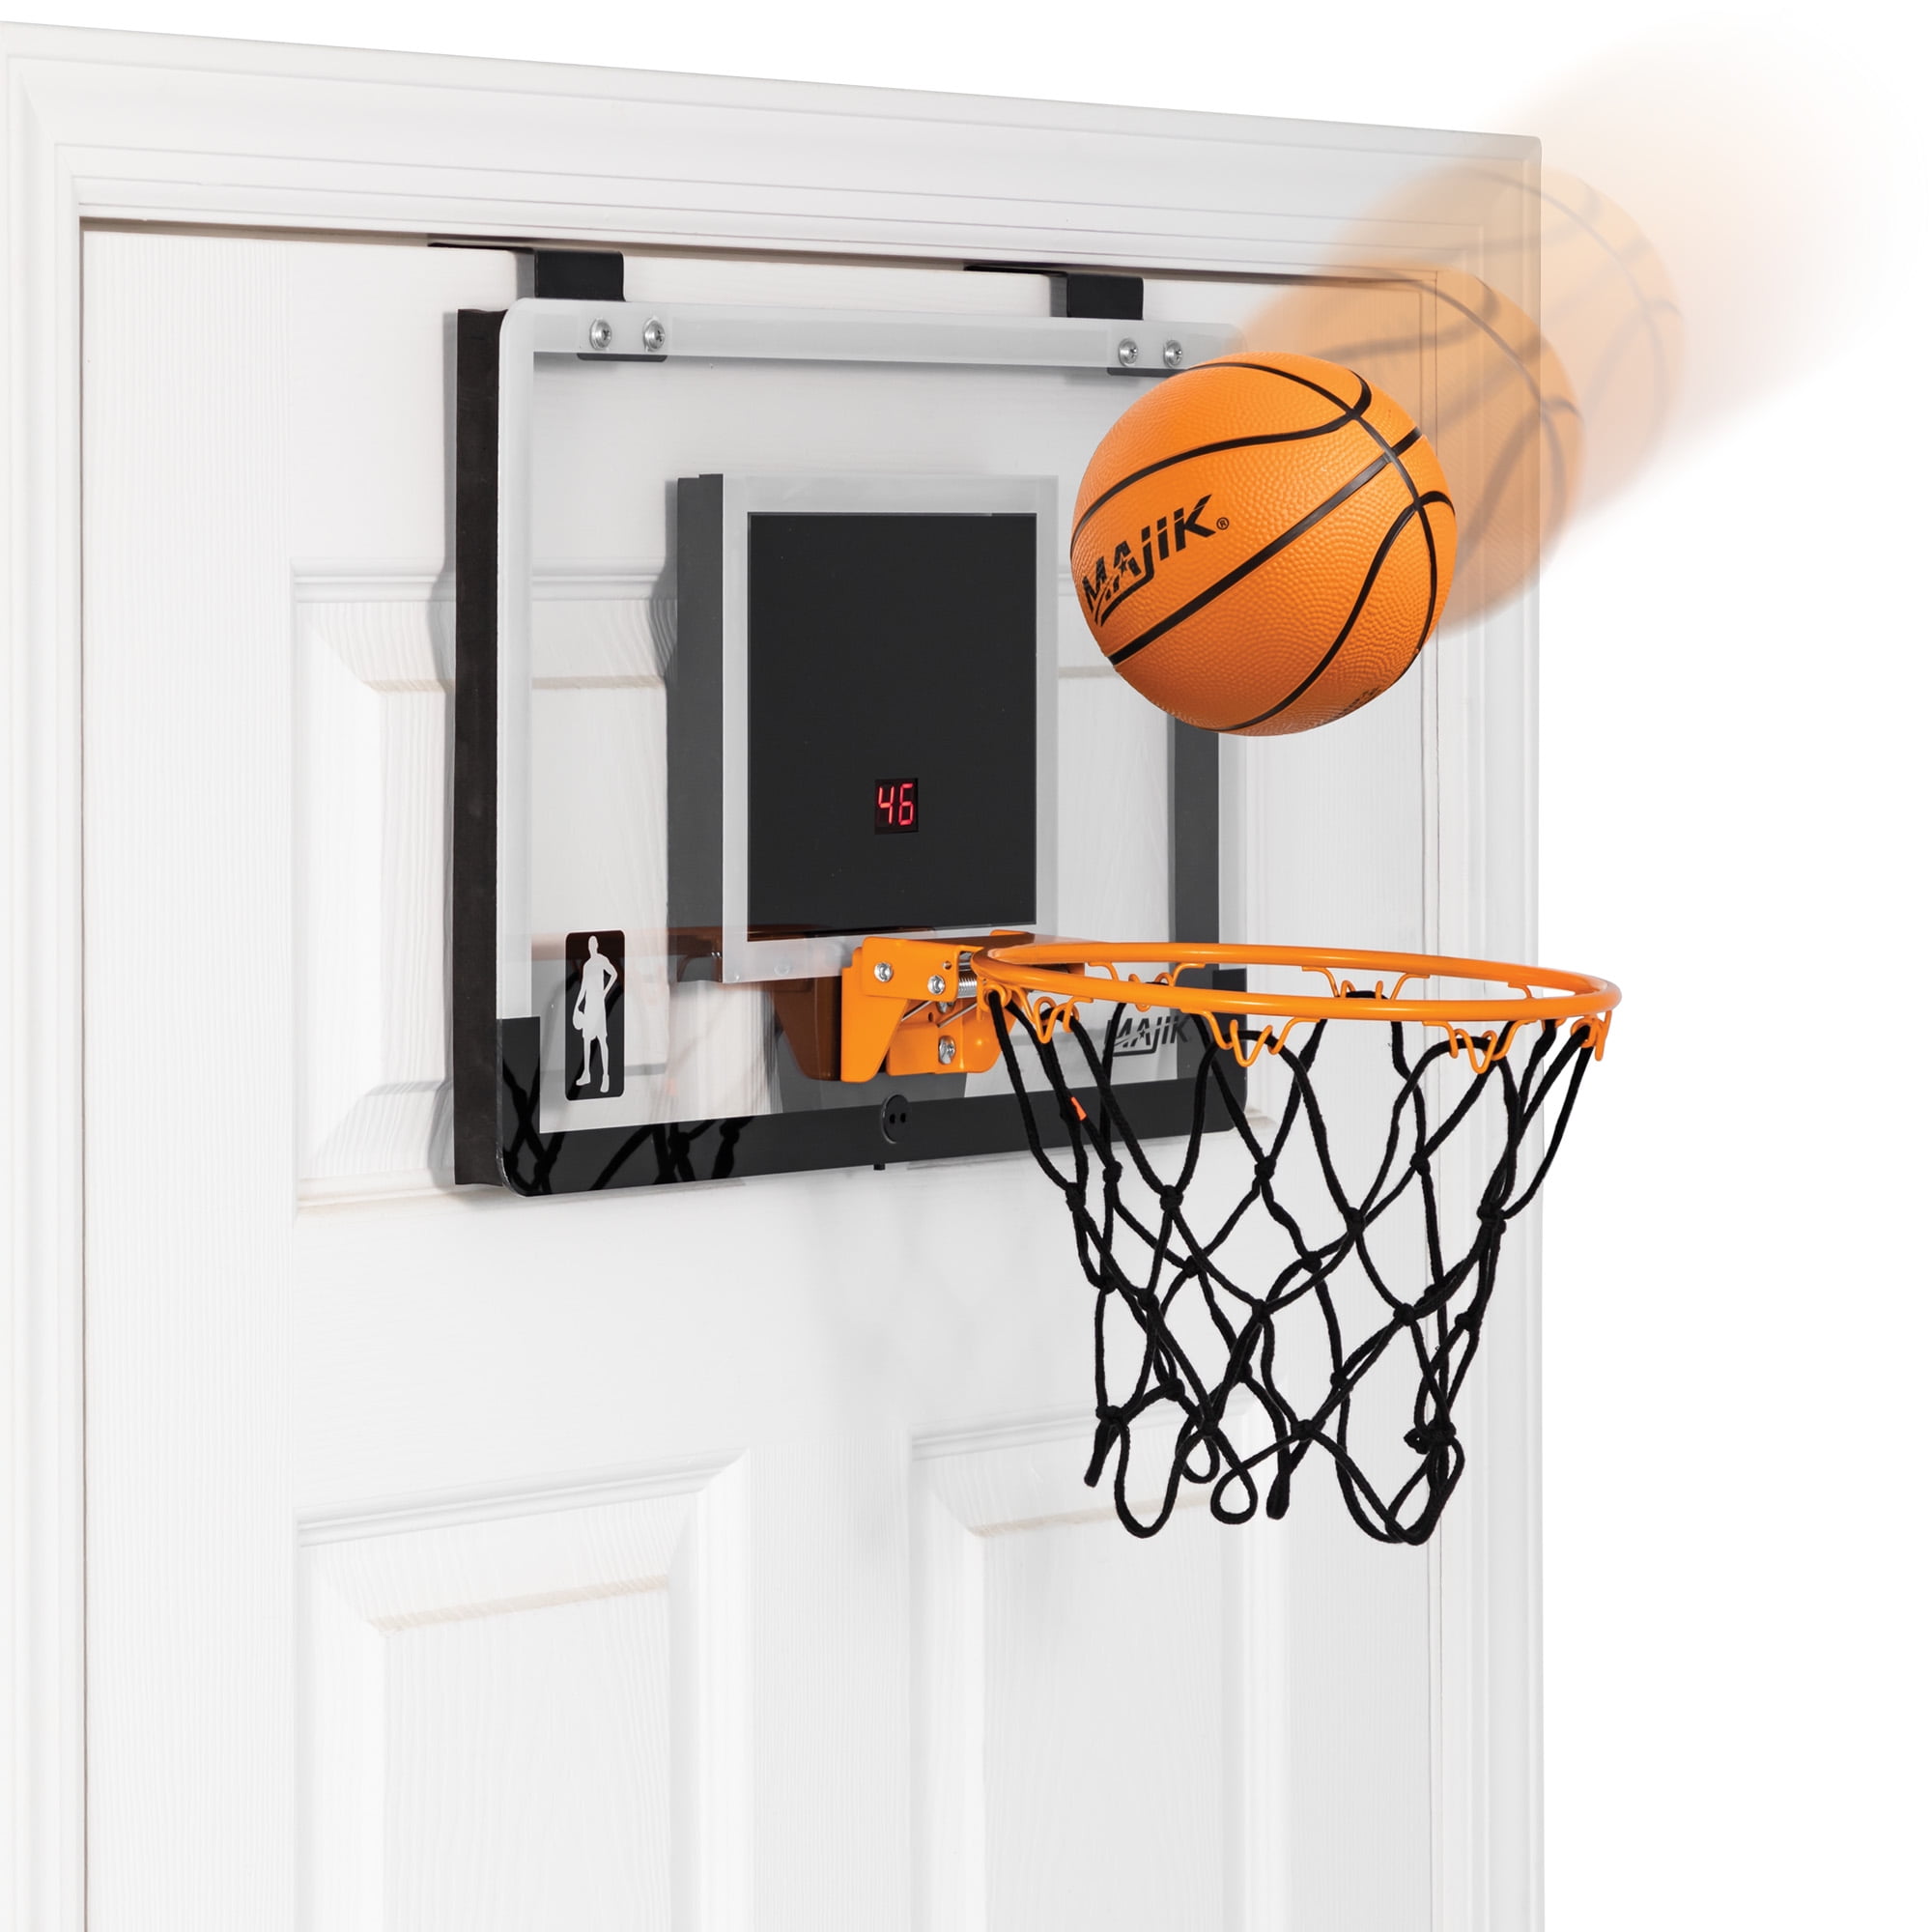 Majik Buzzer Beater Over-The-Door Hanging Mini Basketball Hoop for Indoor ... 